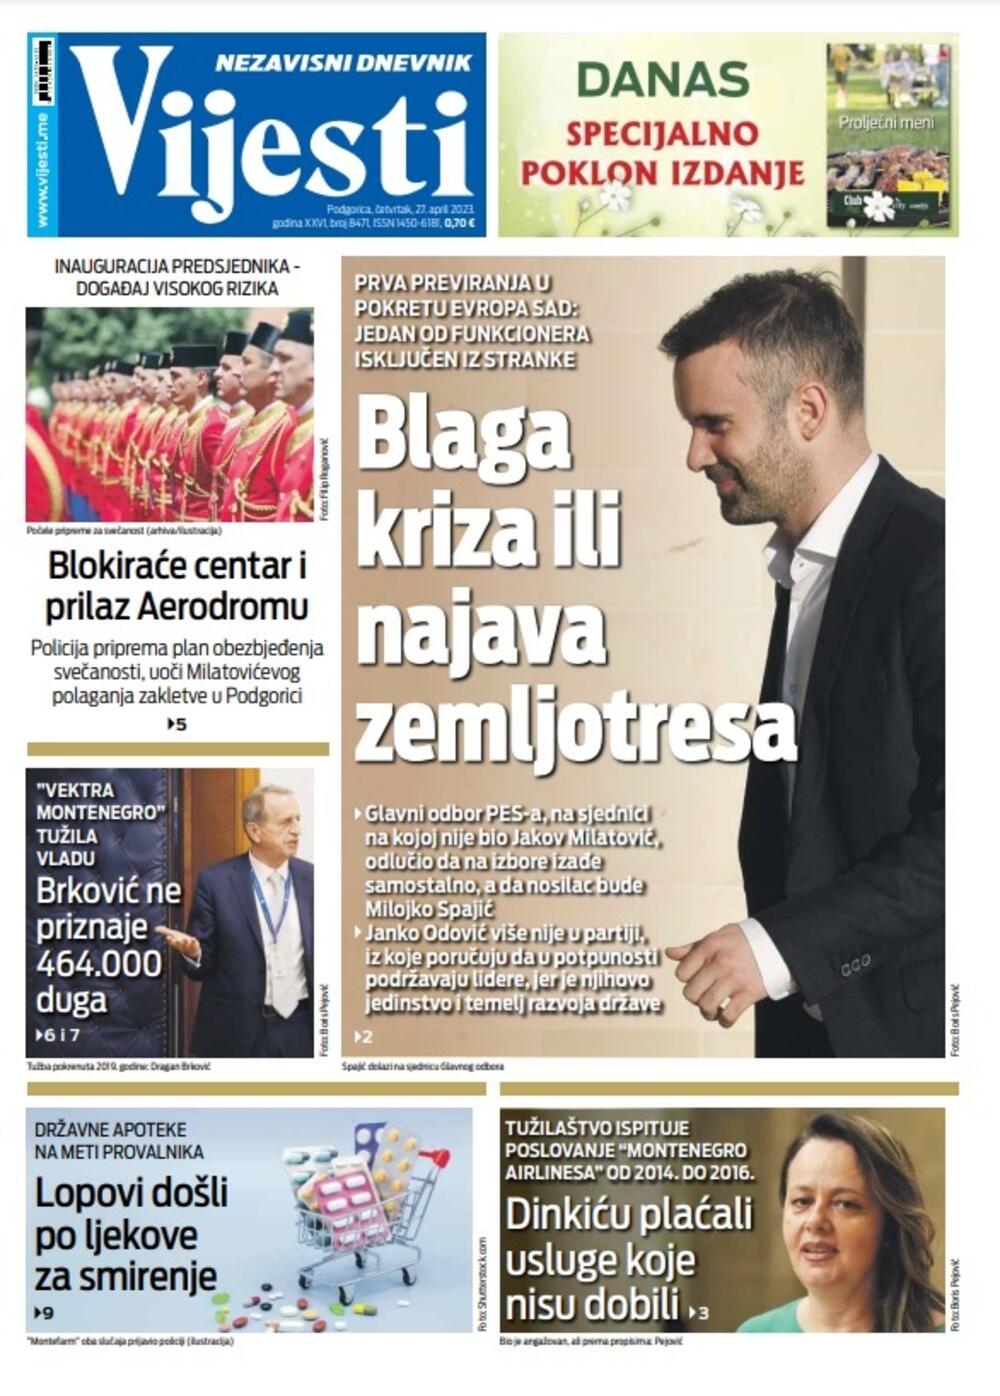 Naslovna strana "Vijesti" za 27. april 2023. godine, Foto: Vijesti